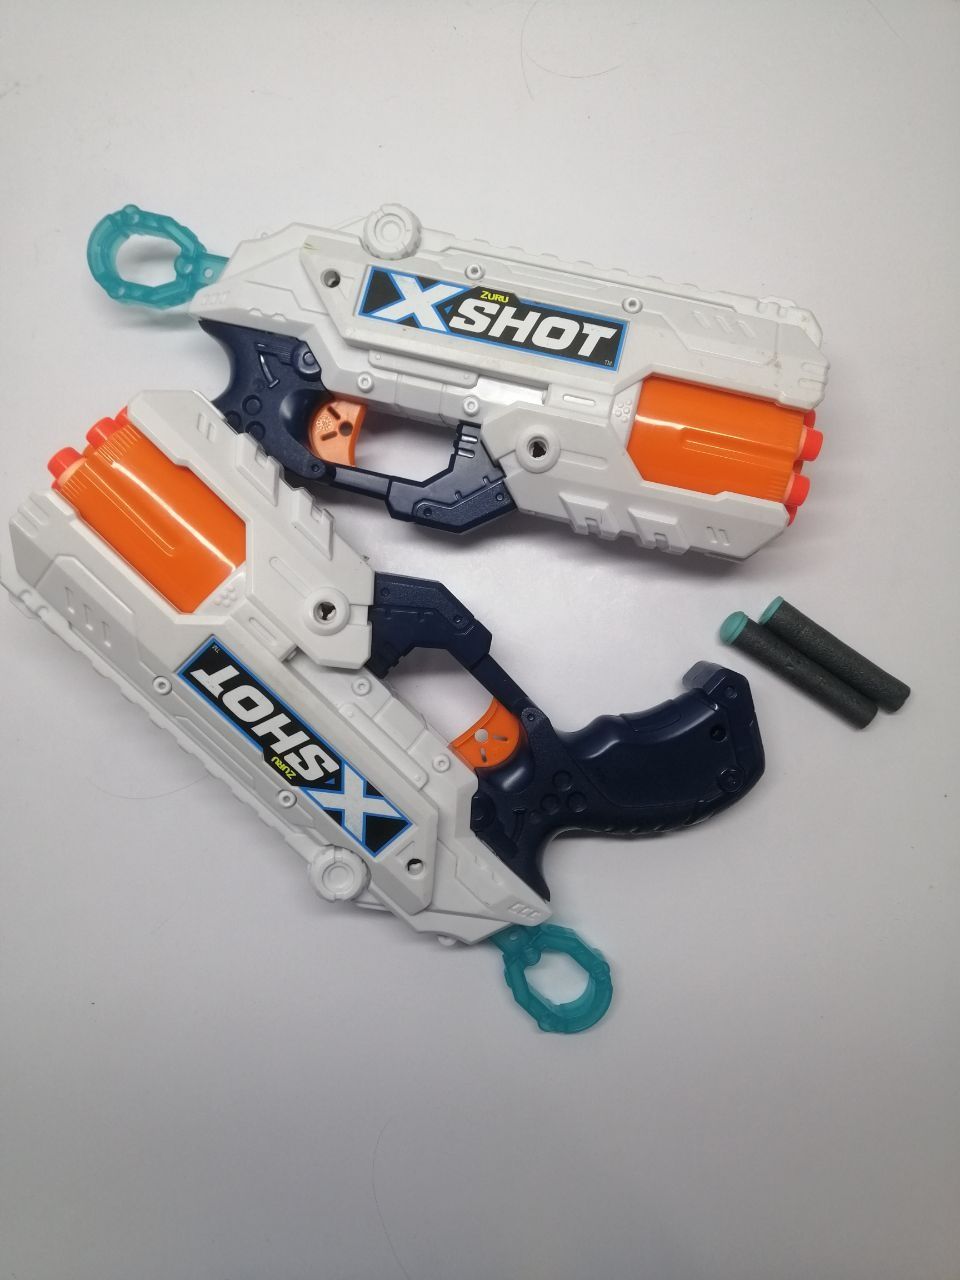 Іграшкові пістолети "X-shot".